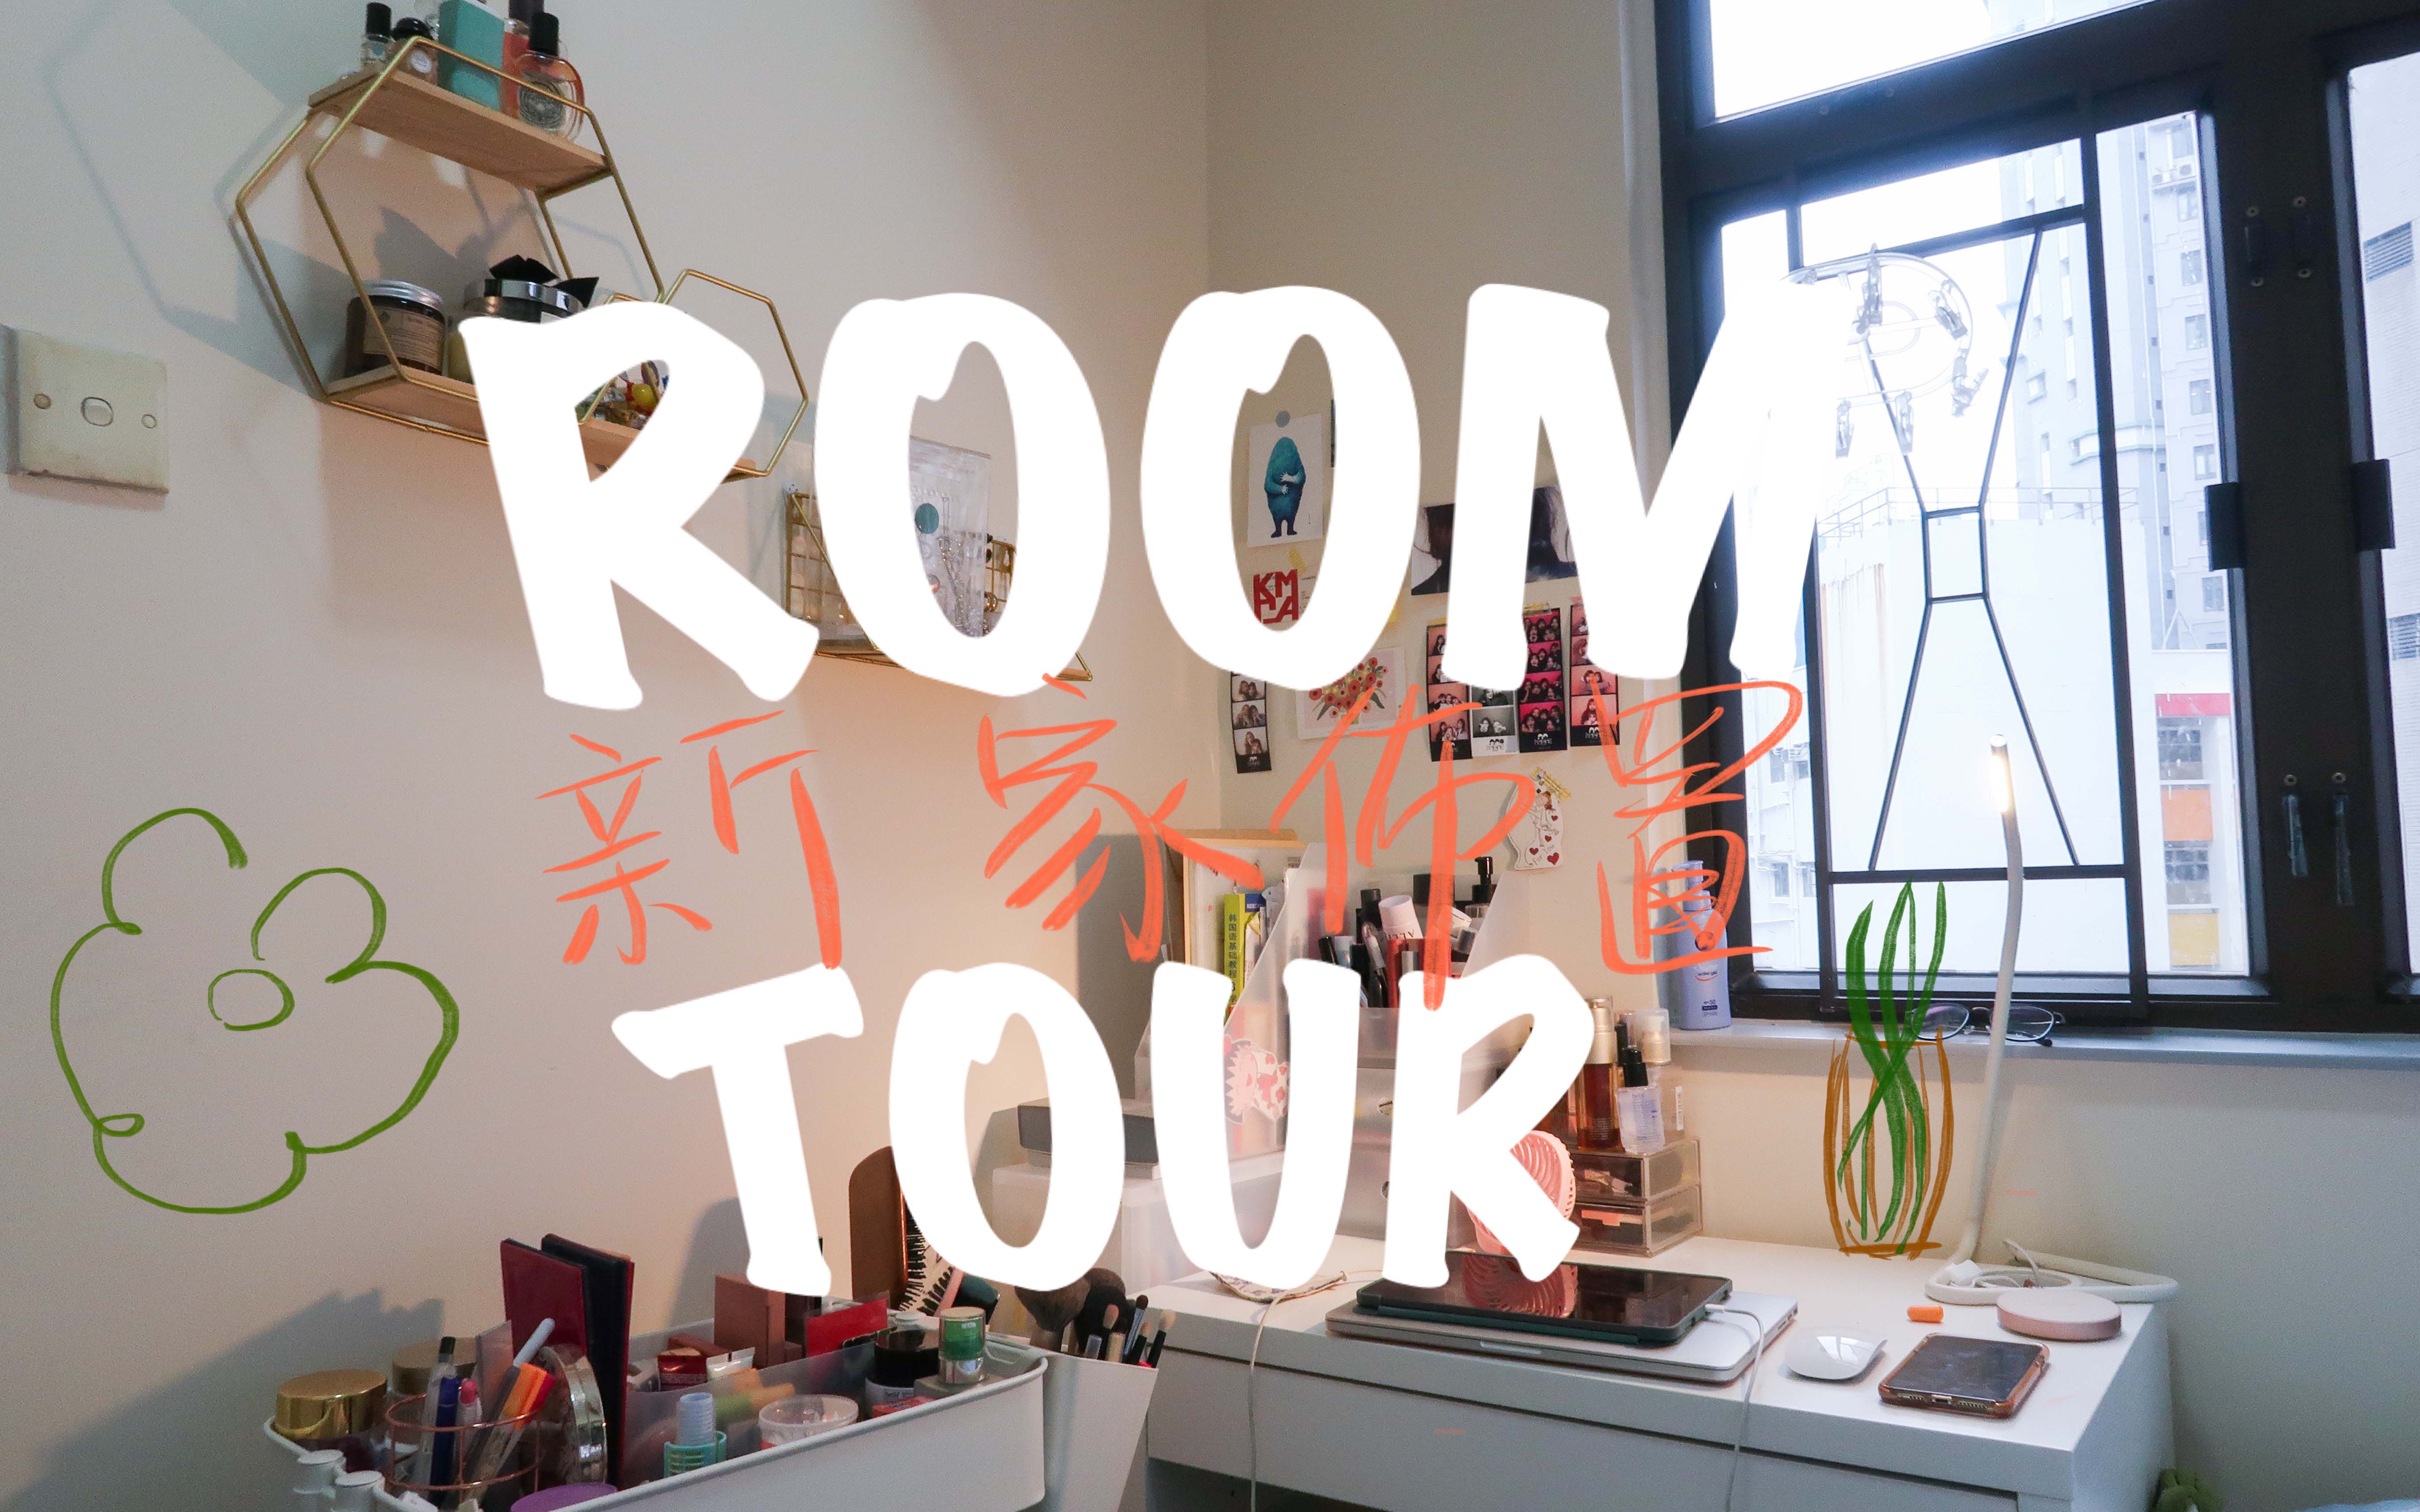 在香港月租$6100可以住什么样的房子 | 温馨蜗居生活Room Tour | 布置房间从零到有 | 5平方米小房间 | 合租生活